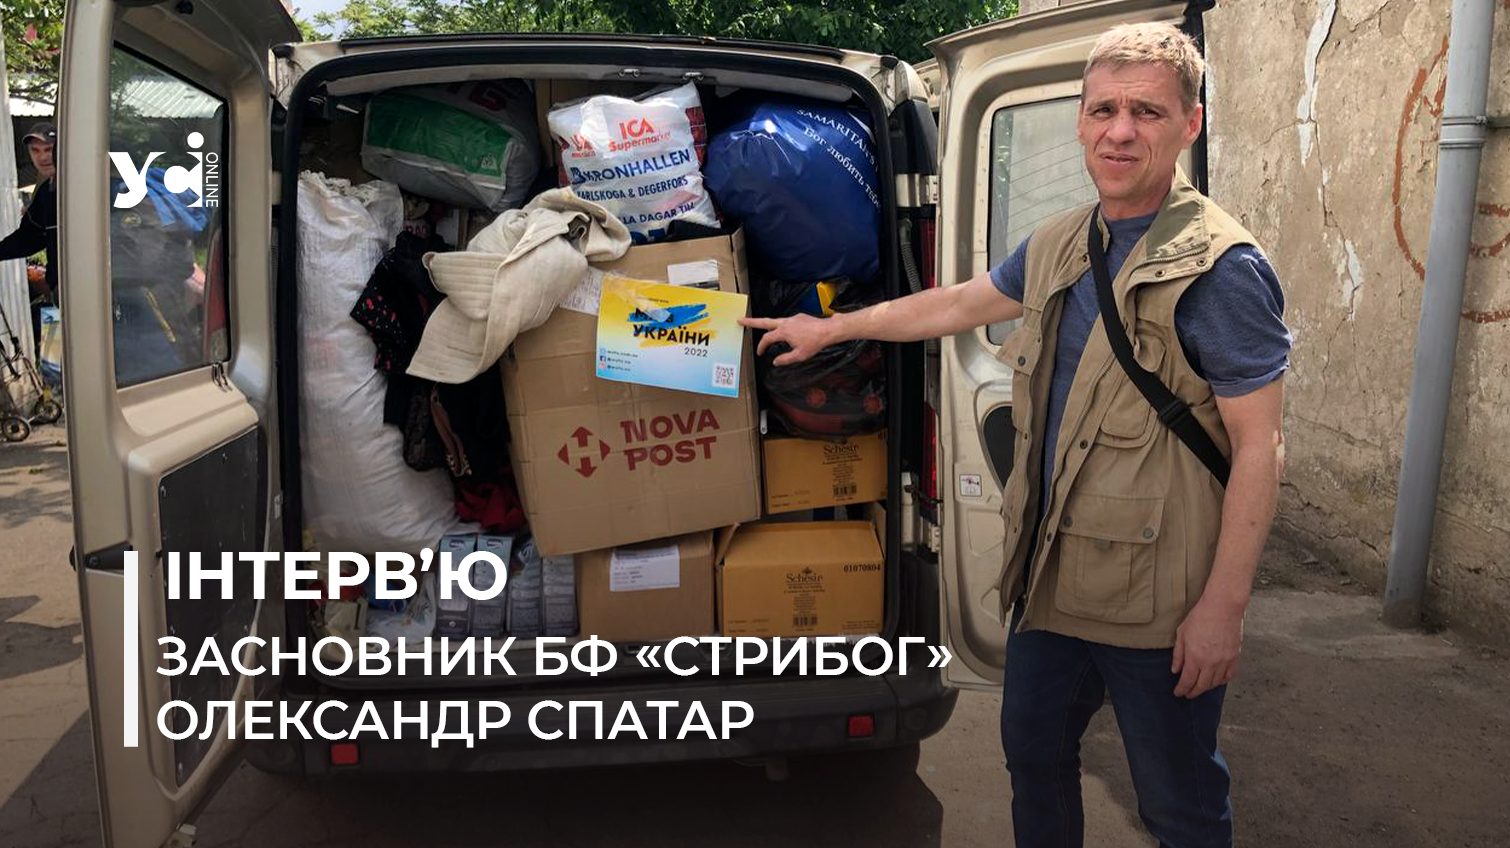 «На початку вторгнення багато людей об’єднувалися, а зараз перегоріли» – Олександр Спатар про велику рушійну силу волонтерства (фото, відео) «фото»